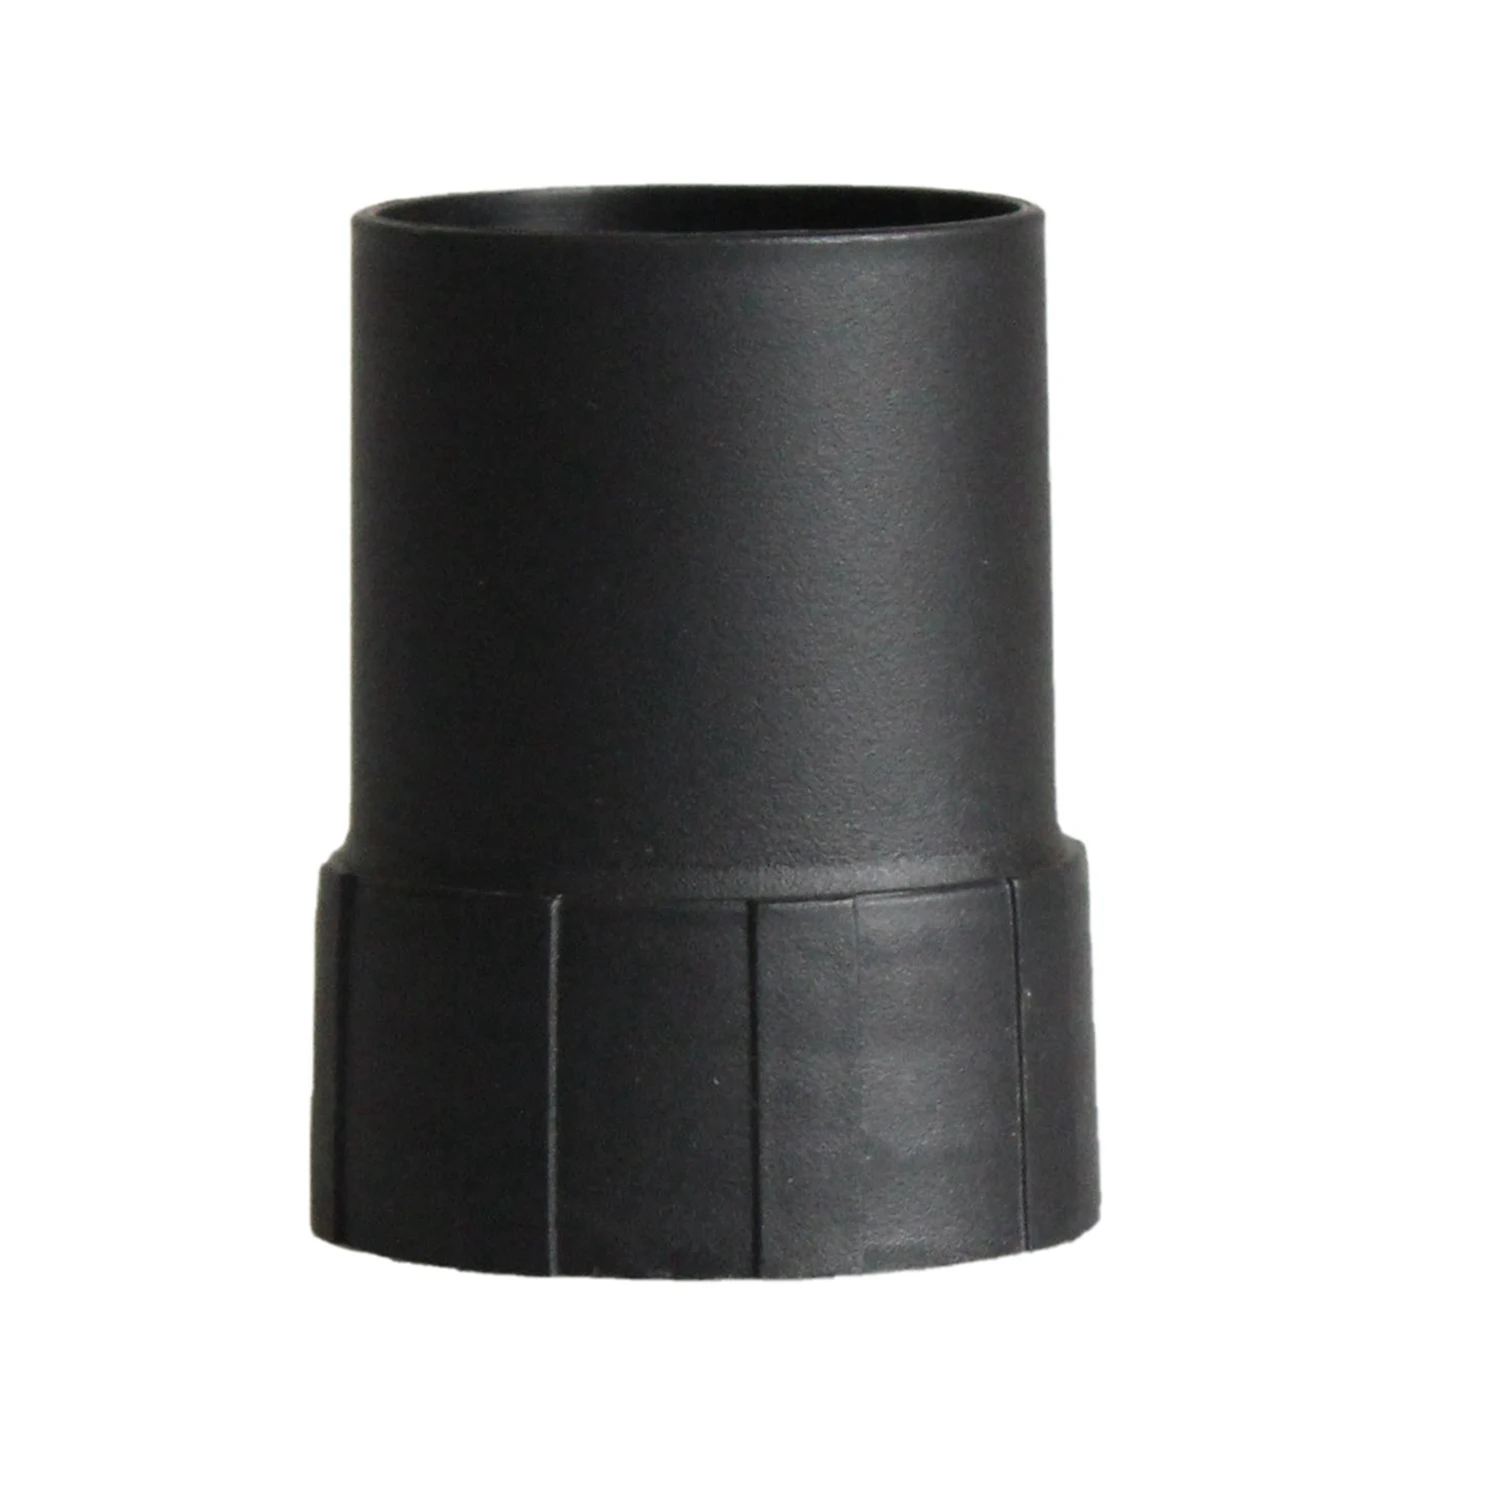 Основной разъем промышленного пылесоса 53/58 мм Для подключения адаптера шланга и узла для деталей пылесоса с резьбой 50 мм/58 мм